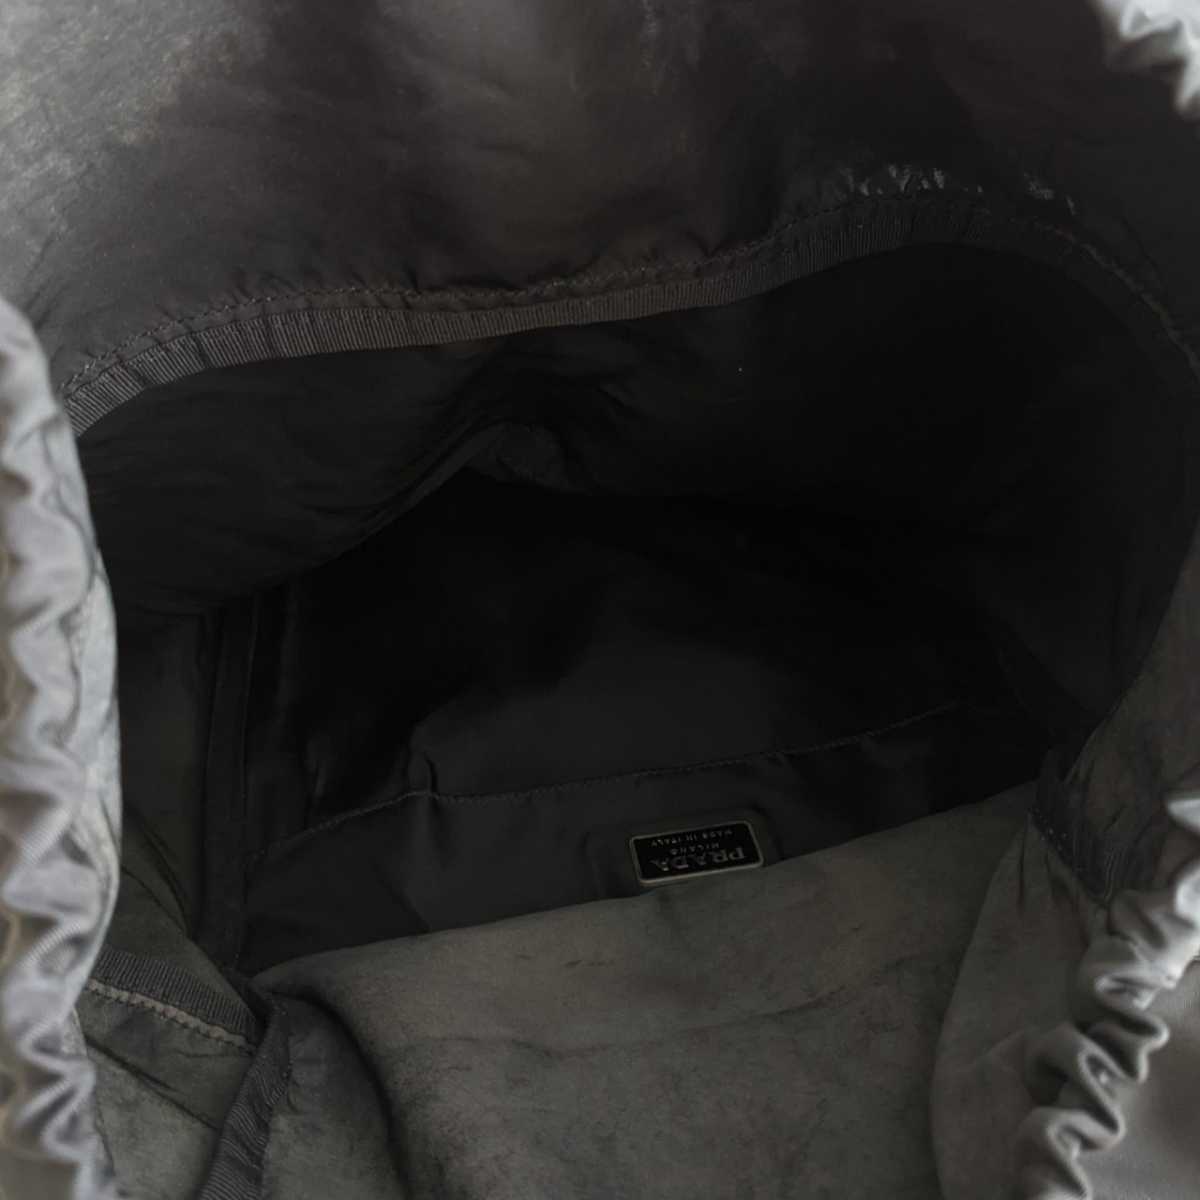 良品 PRADA プラダ 名作☆ V136 特大 リュック 巾着 バッグ 軽量 ナイロン バックパック 鞄 マザーズバッグ 黒 ブラック レディース  メンズ